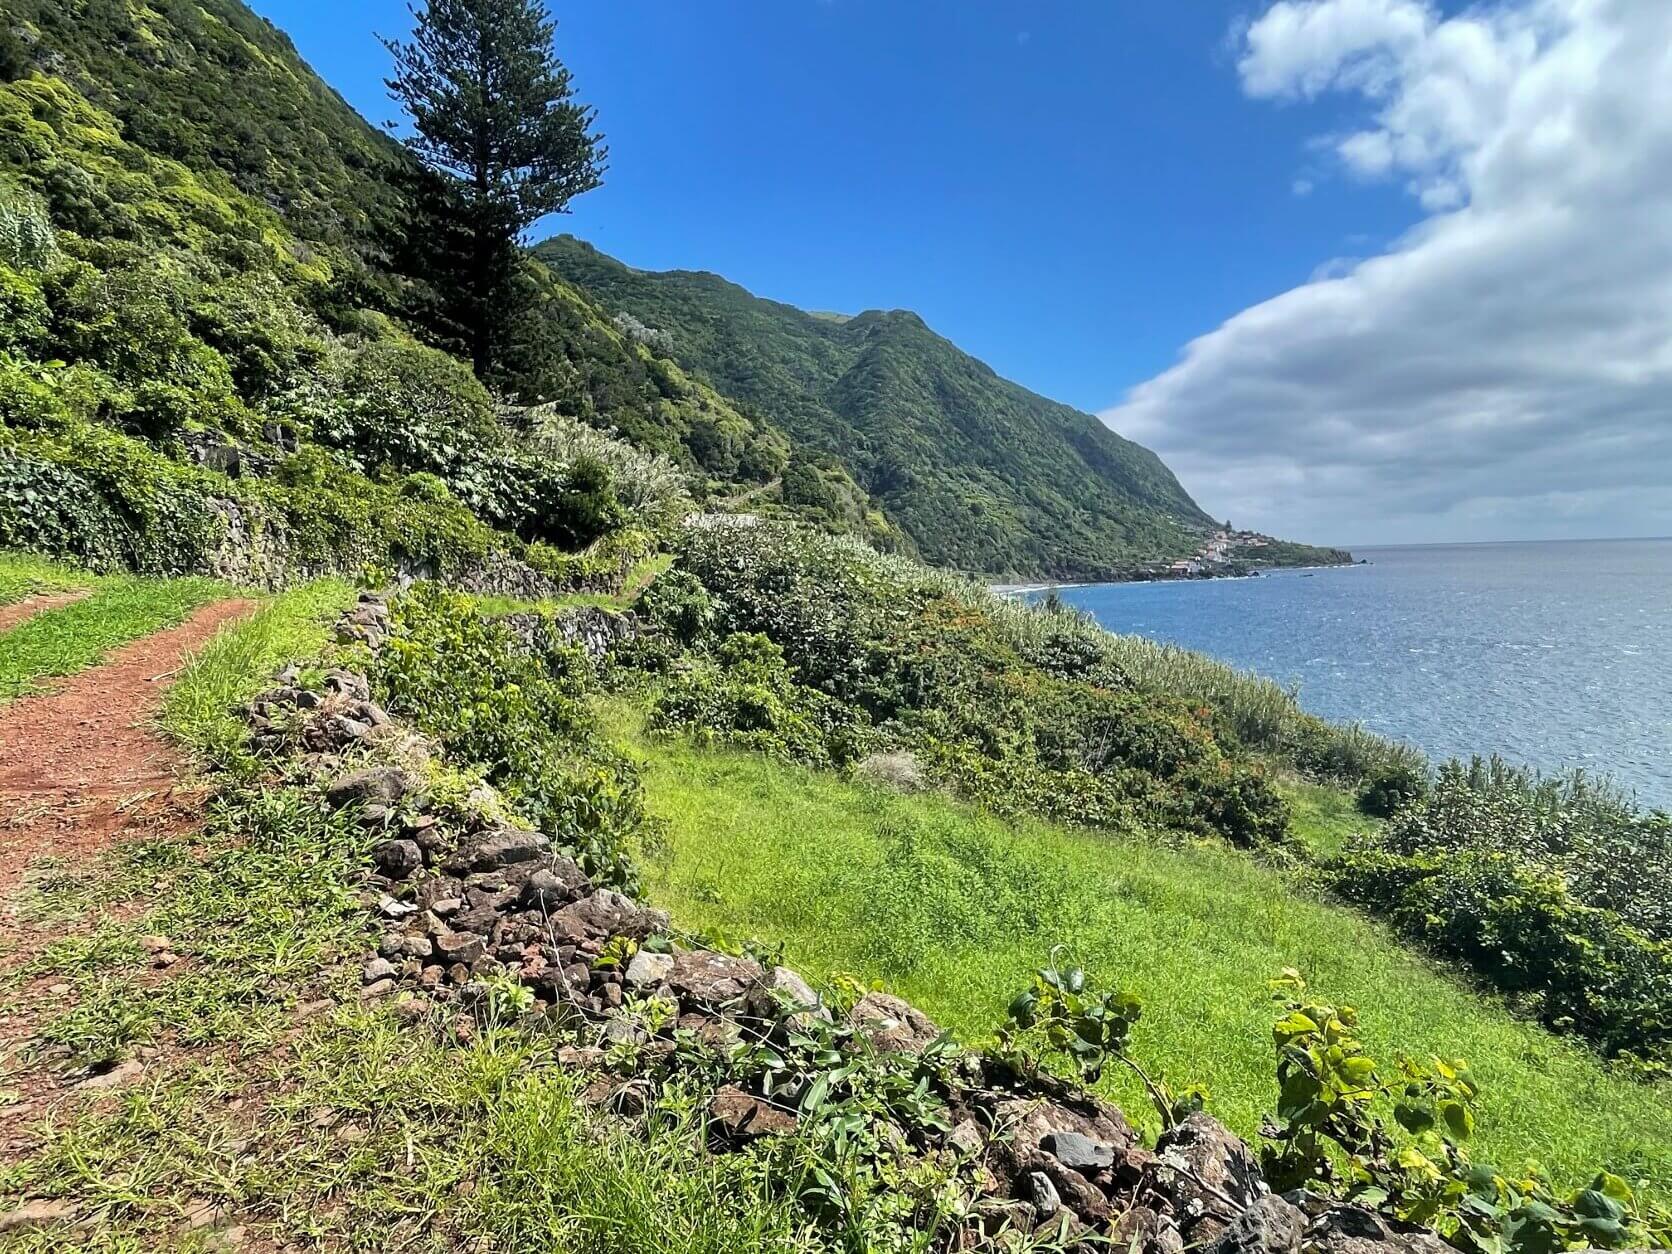 São Jorge island (Azores) travel guide: a guide to visit the